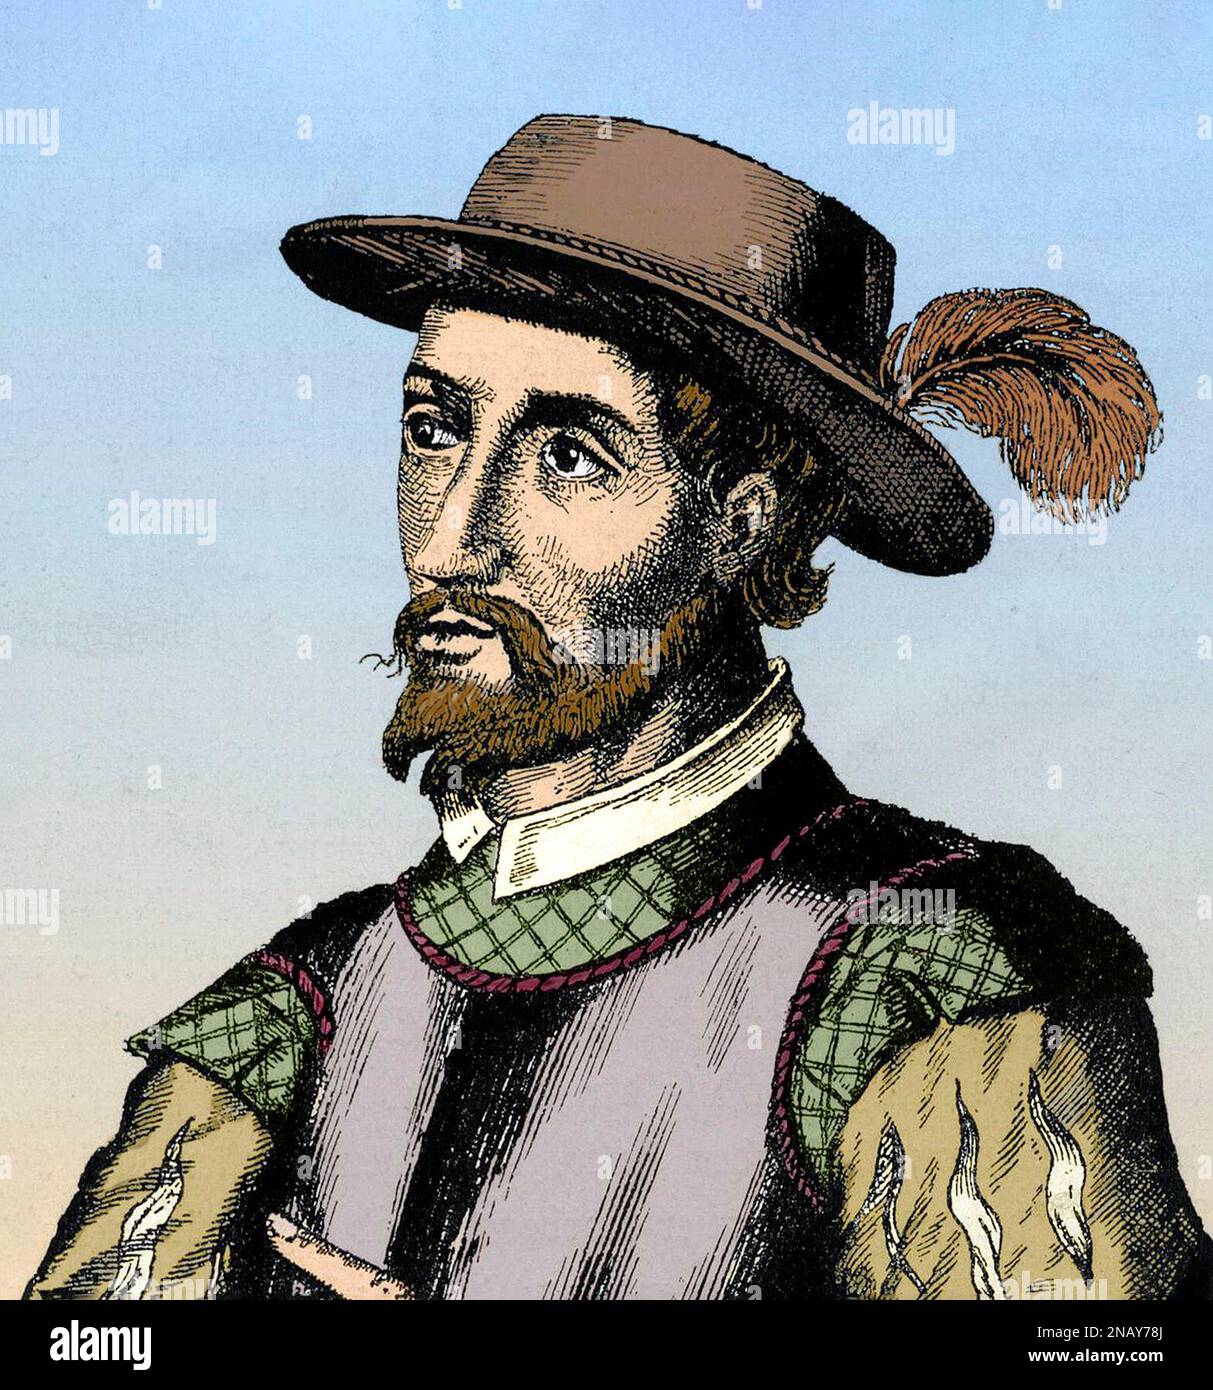 Ponce de Leon. Portrait of the Spanish explorer and conquistador, Juan Ponce de León (1474-1521), engraving, 17th century Stock Photo